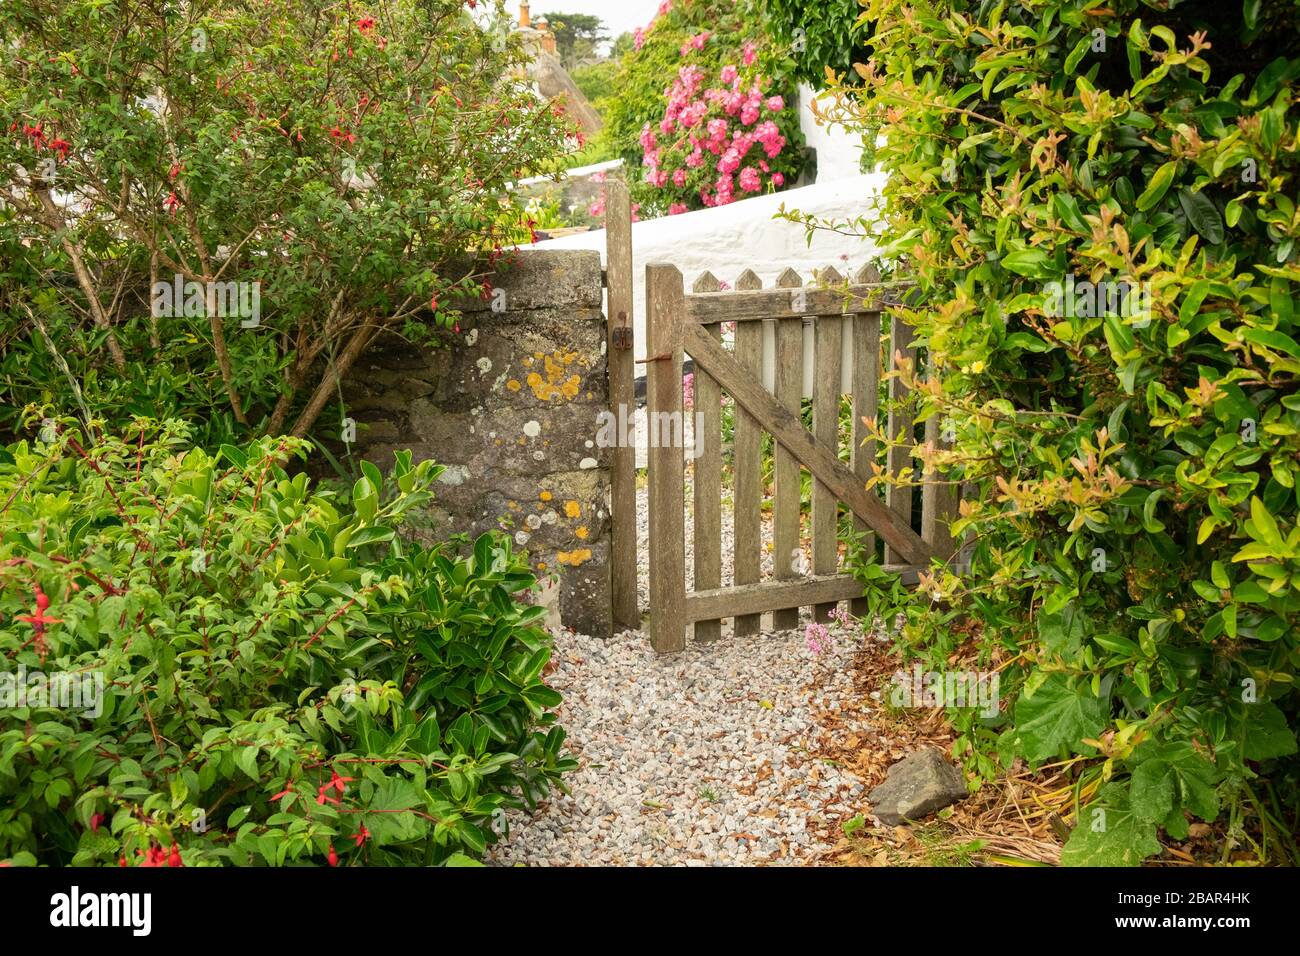 Porte de jardin en bois au cottage et mur de pierre dans le petit village pittoresque de pêche de Cadgwith, Cornwall, Angleterre Banque D'Images